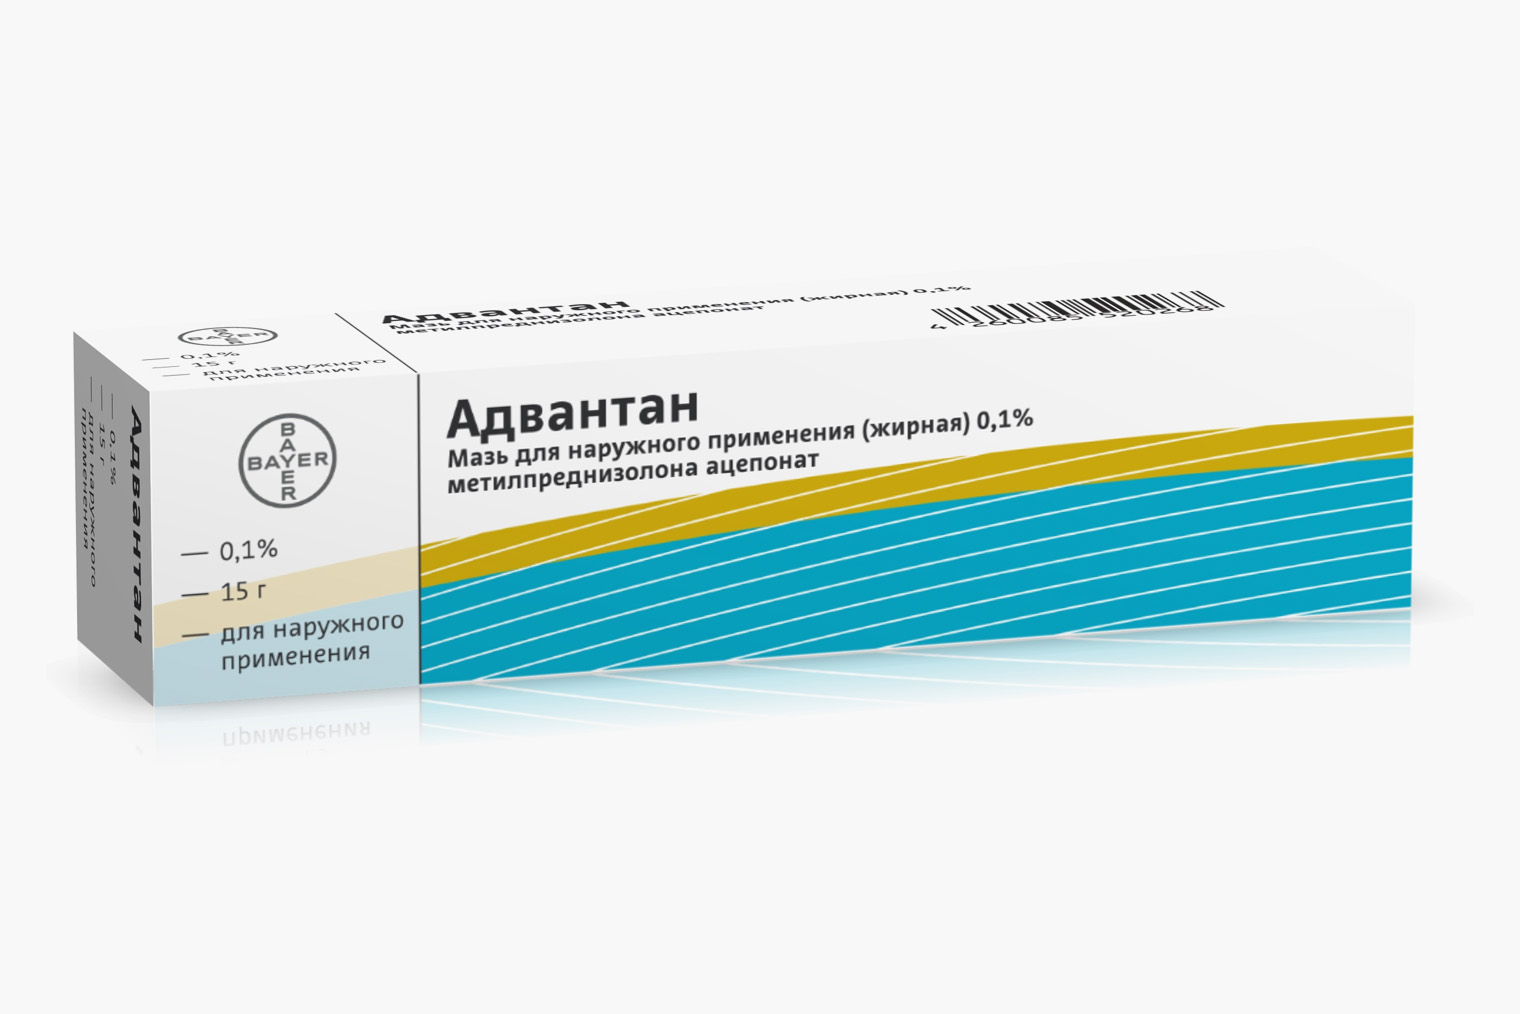 Цена за 15 граммов популярного препарата с метилпреднизолоном «Адвантан» начинается от 549 ₽, чуть менее популярный дженерик «Комфодерм» стоит от 392 ₽